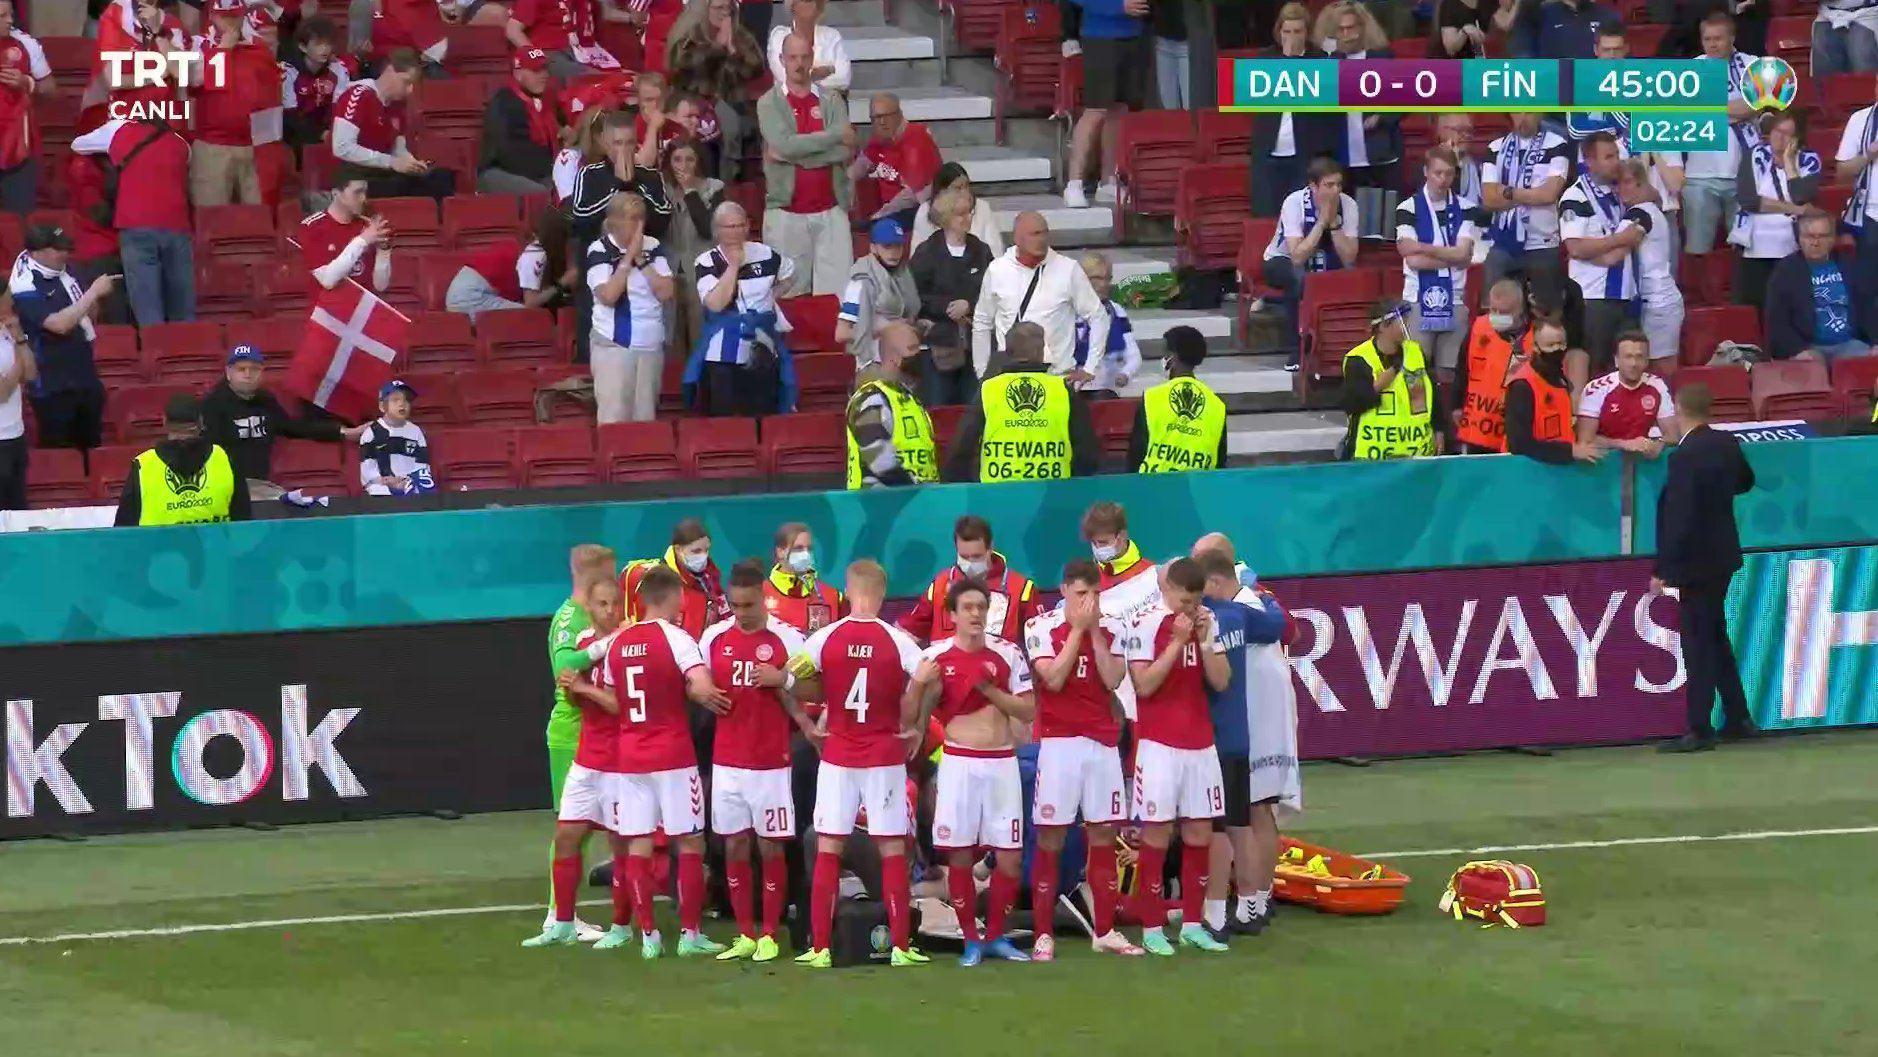 Danimarka - Finlandiya maçında korku dolu anlar Futbolcular gözyaşlarına boğuldu